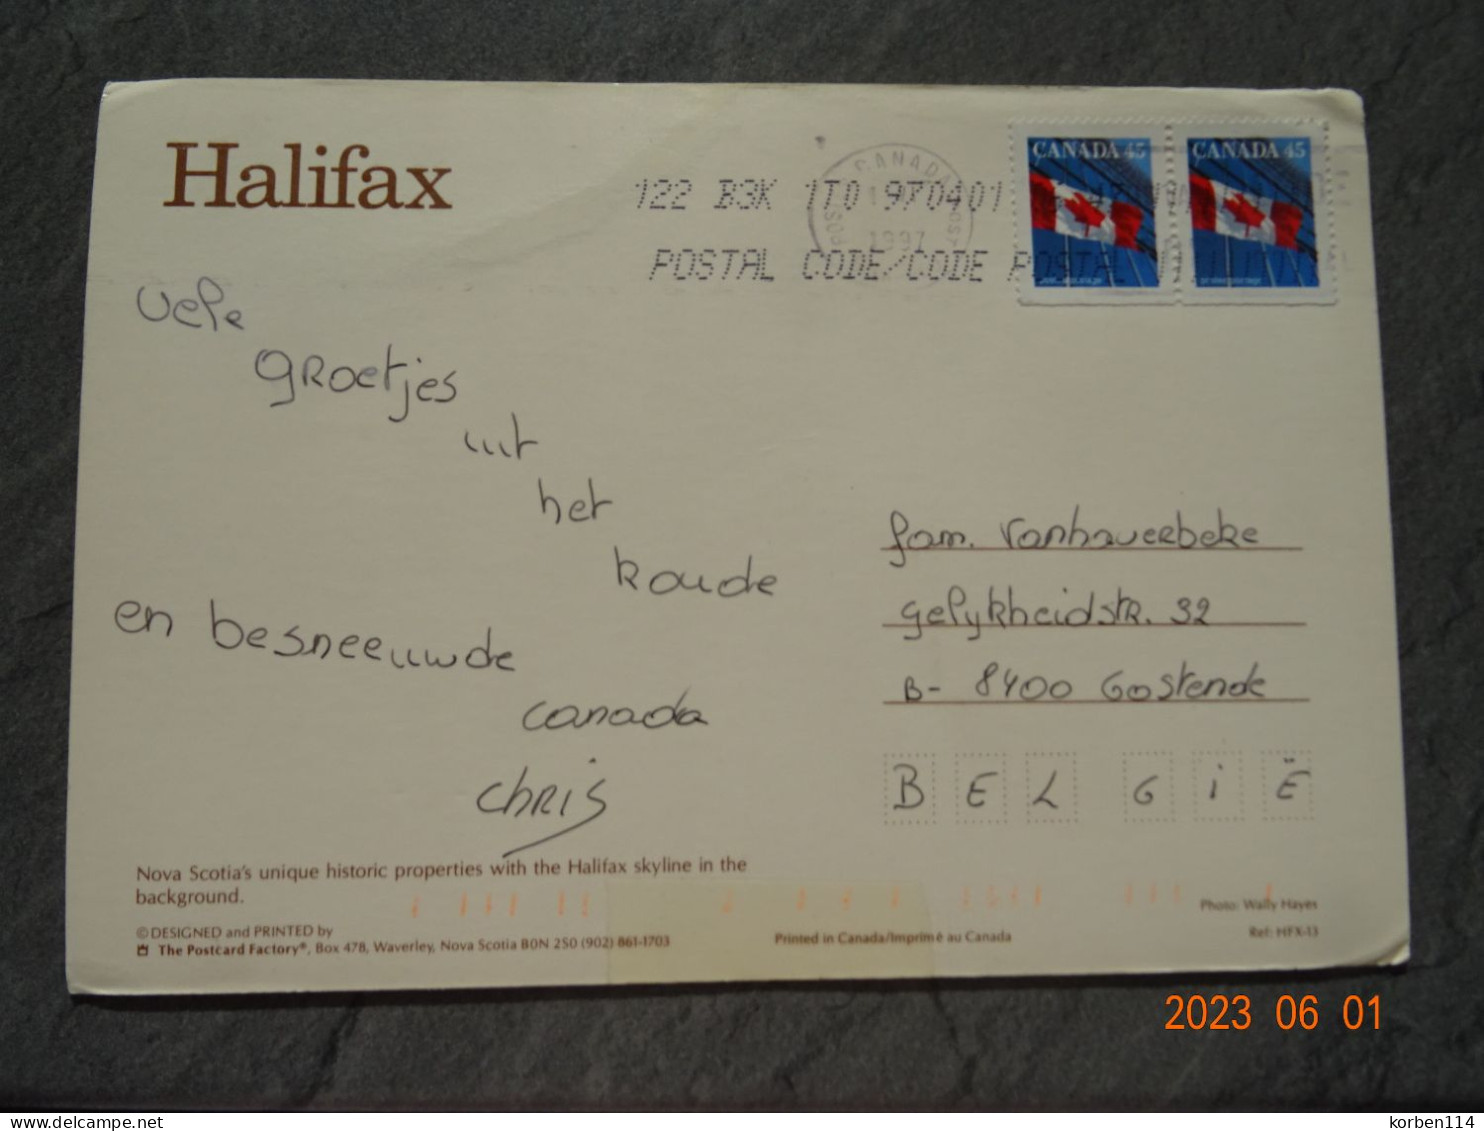 HALIFAX - Halifax